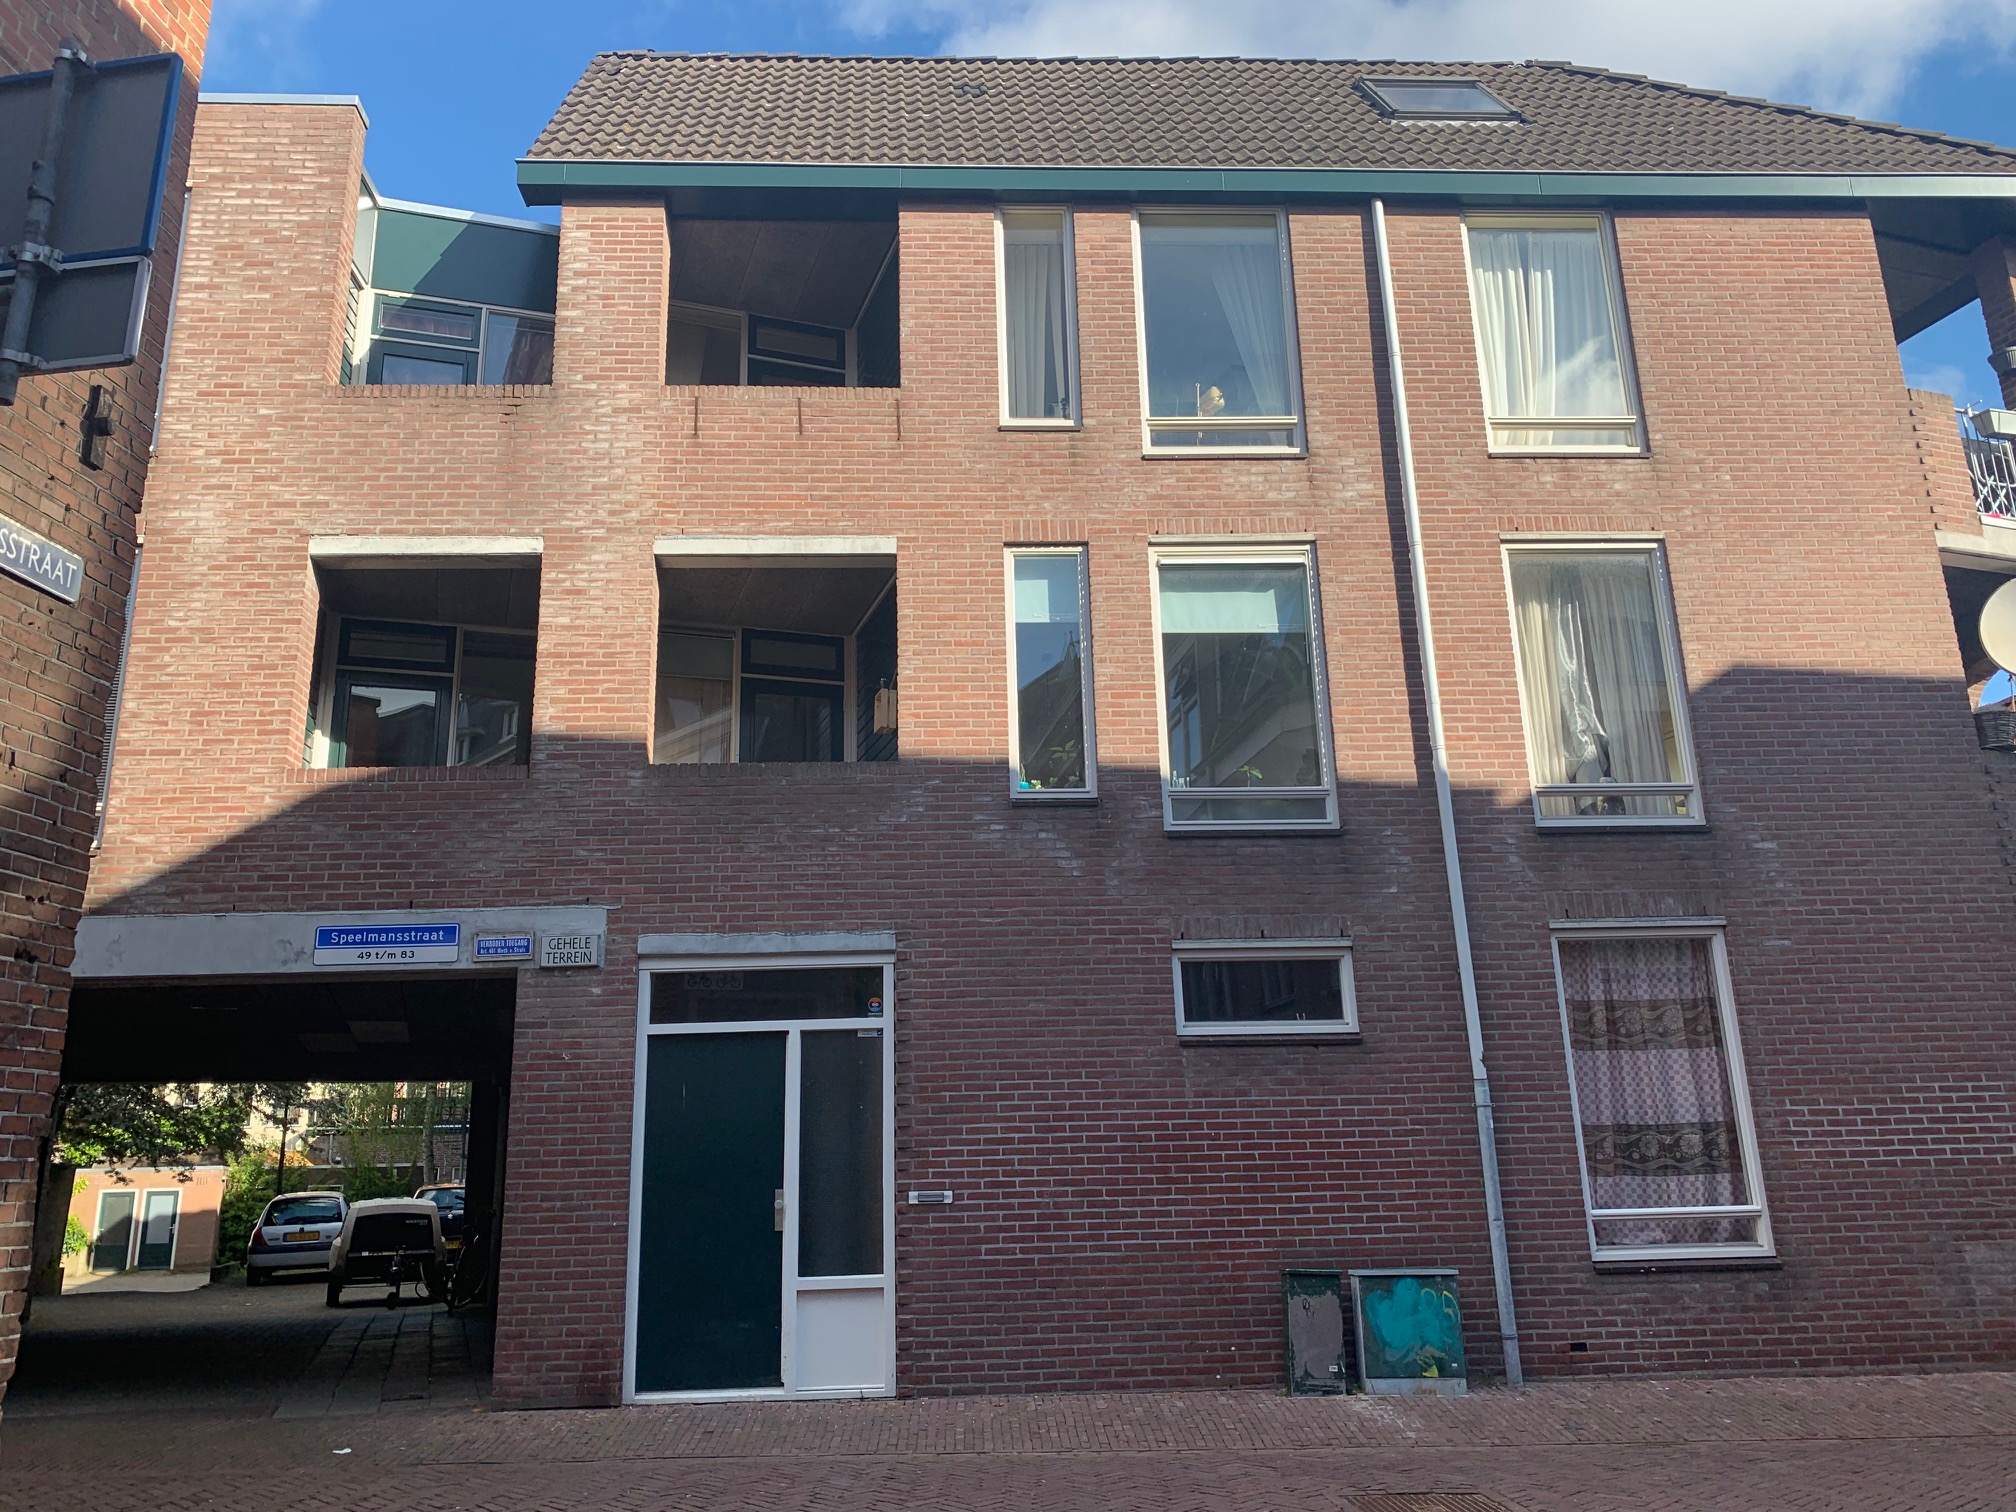 Speelmansstraat 51, 8911 GN Leeuwarden, Nederland